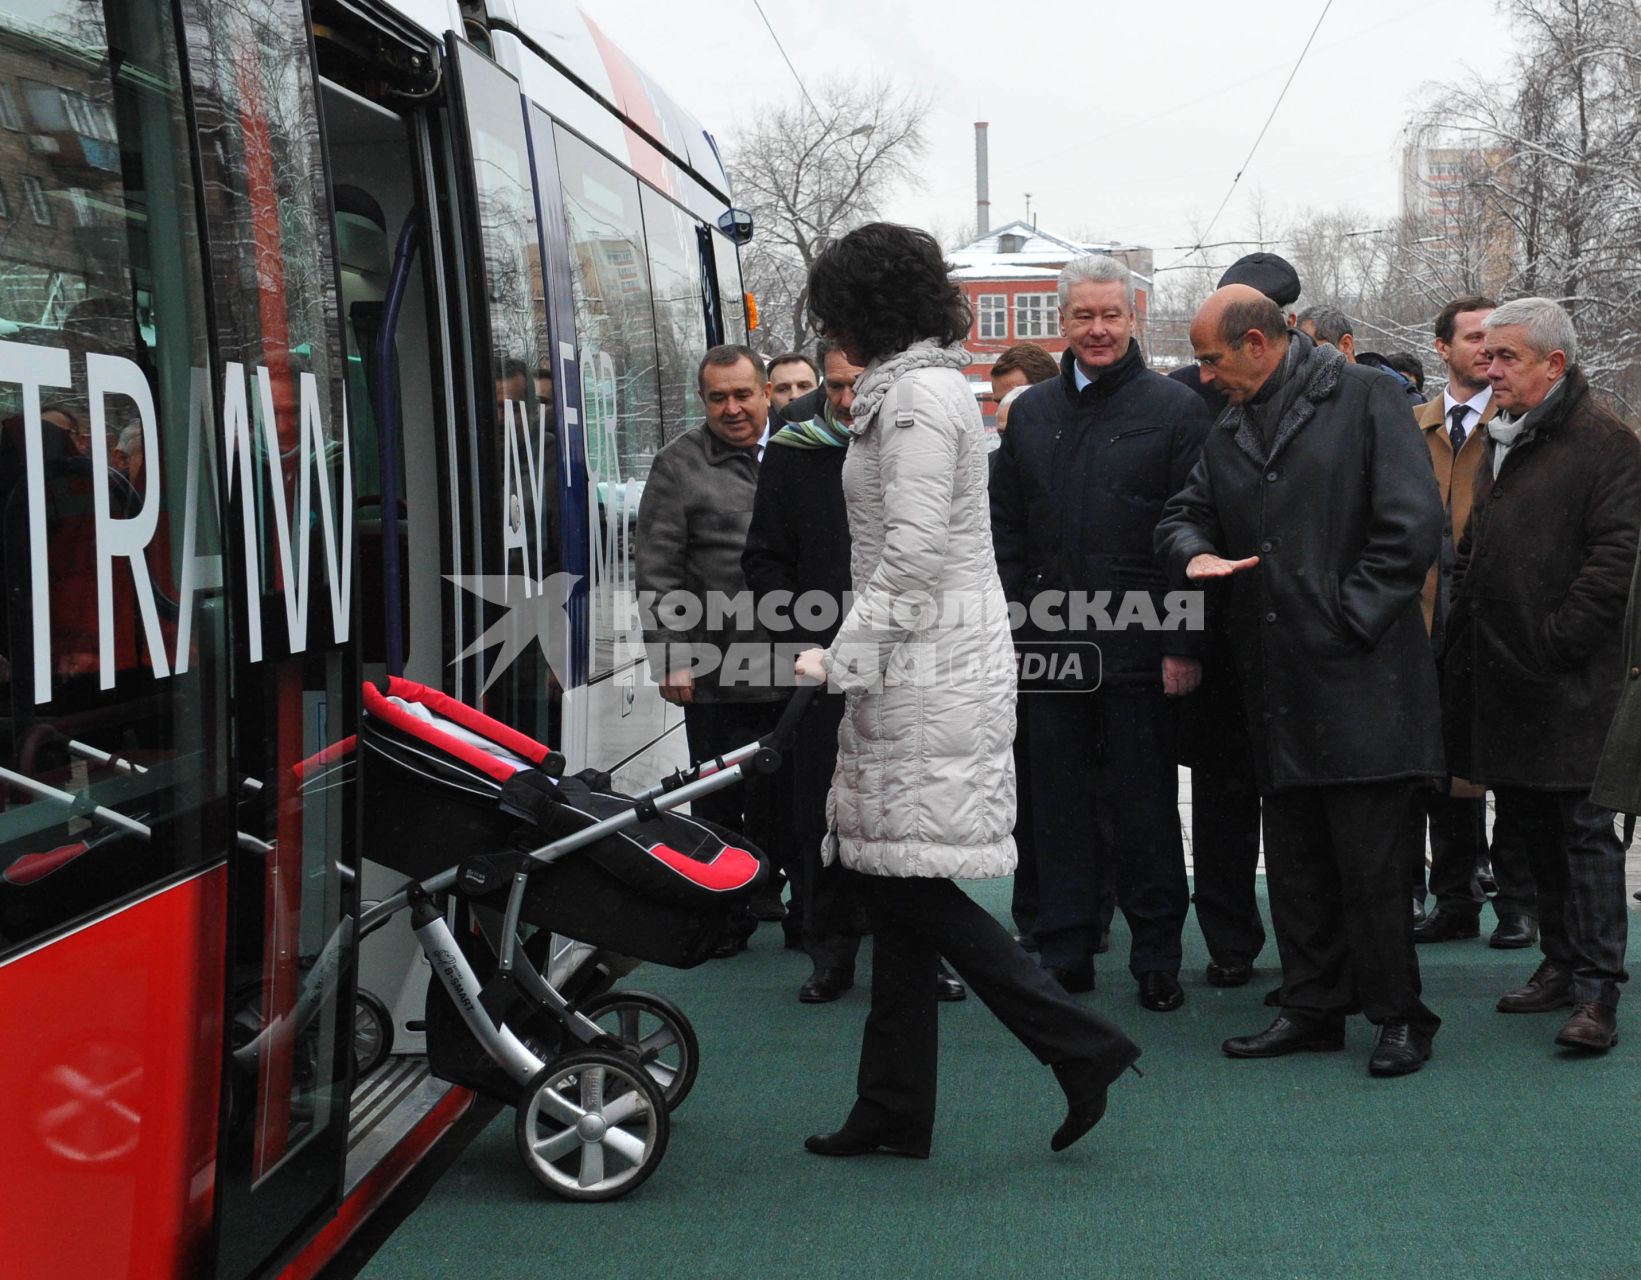 В Москве состоялась презентация трамвая нового поколения, совместная разработка франзузской фирмы `Alstom` и `Трансмашхолдинг`. На снимке: женщина с коляской входит в трамвай, на заднем плане мэр Москвы Сергей Собянин (третий справа на втором плане).